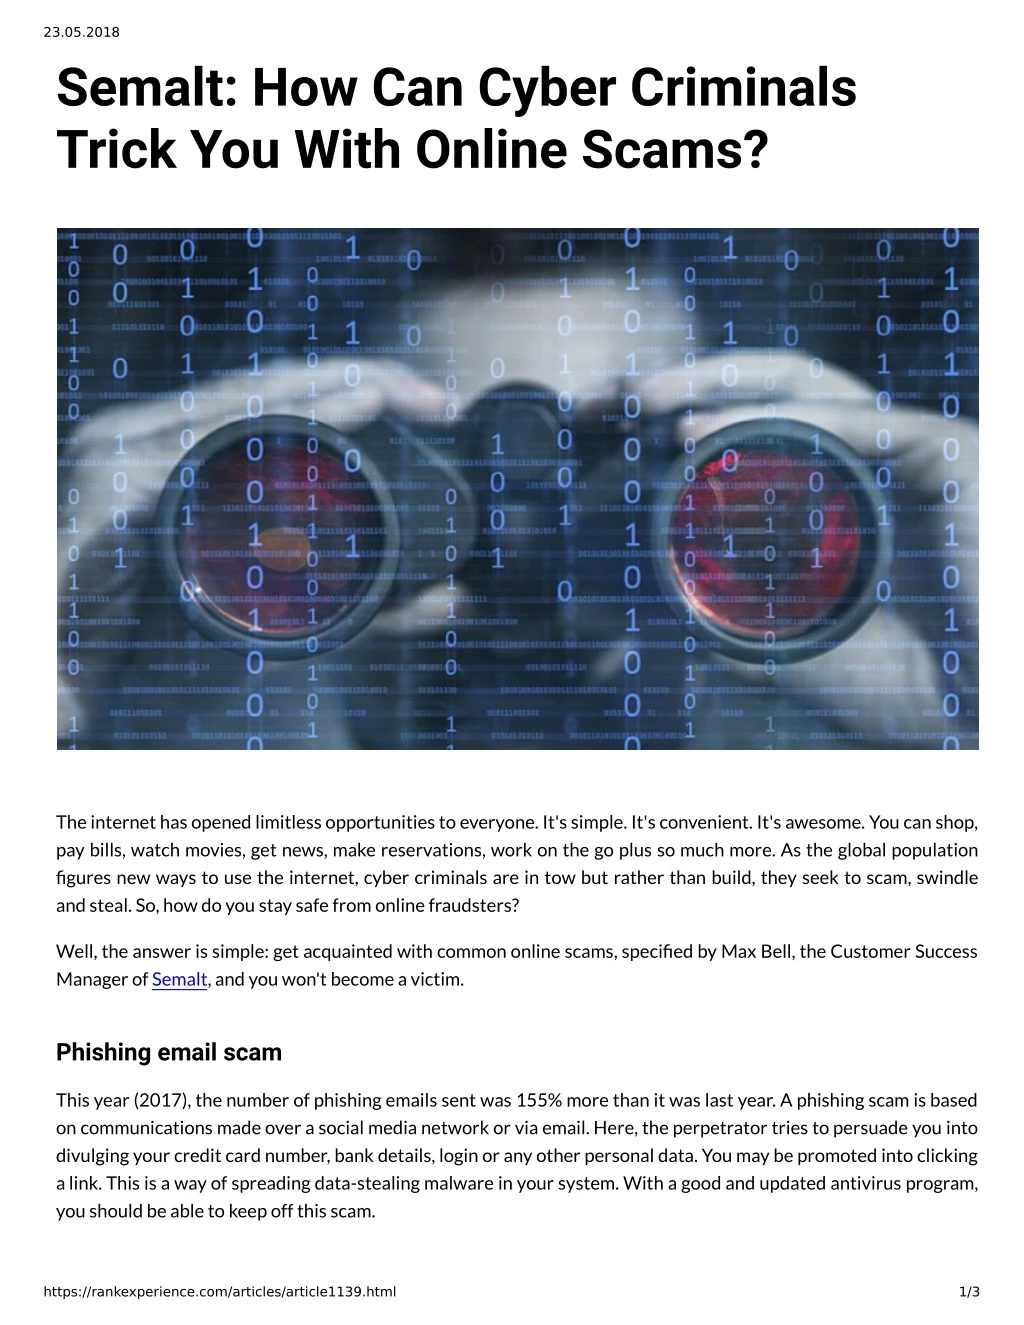 23 05 2018 semalt how can cyber criminals trick